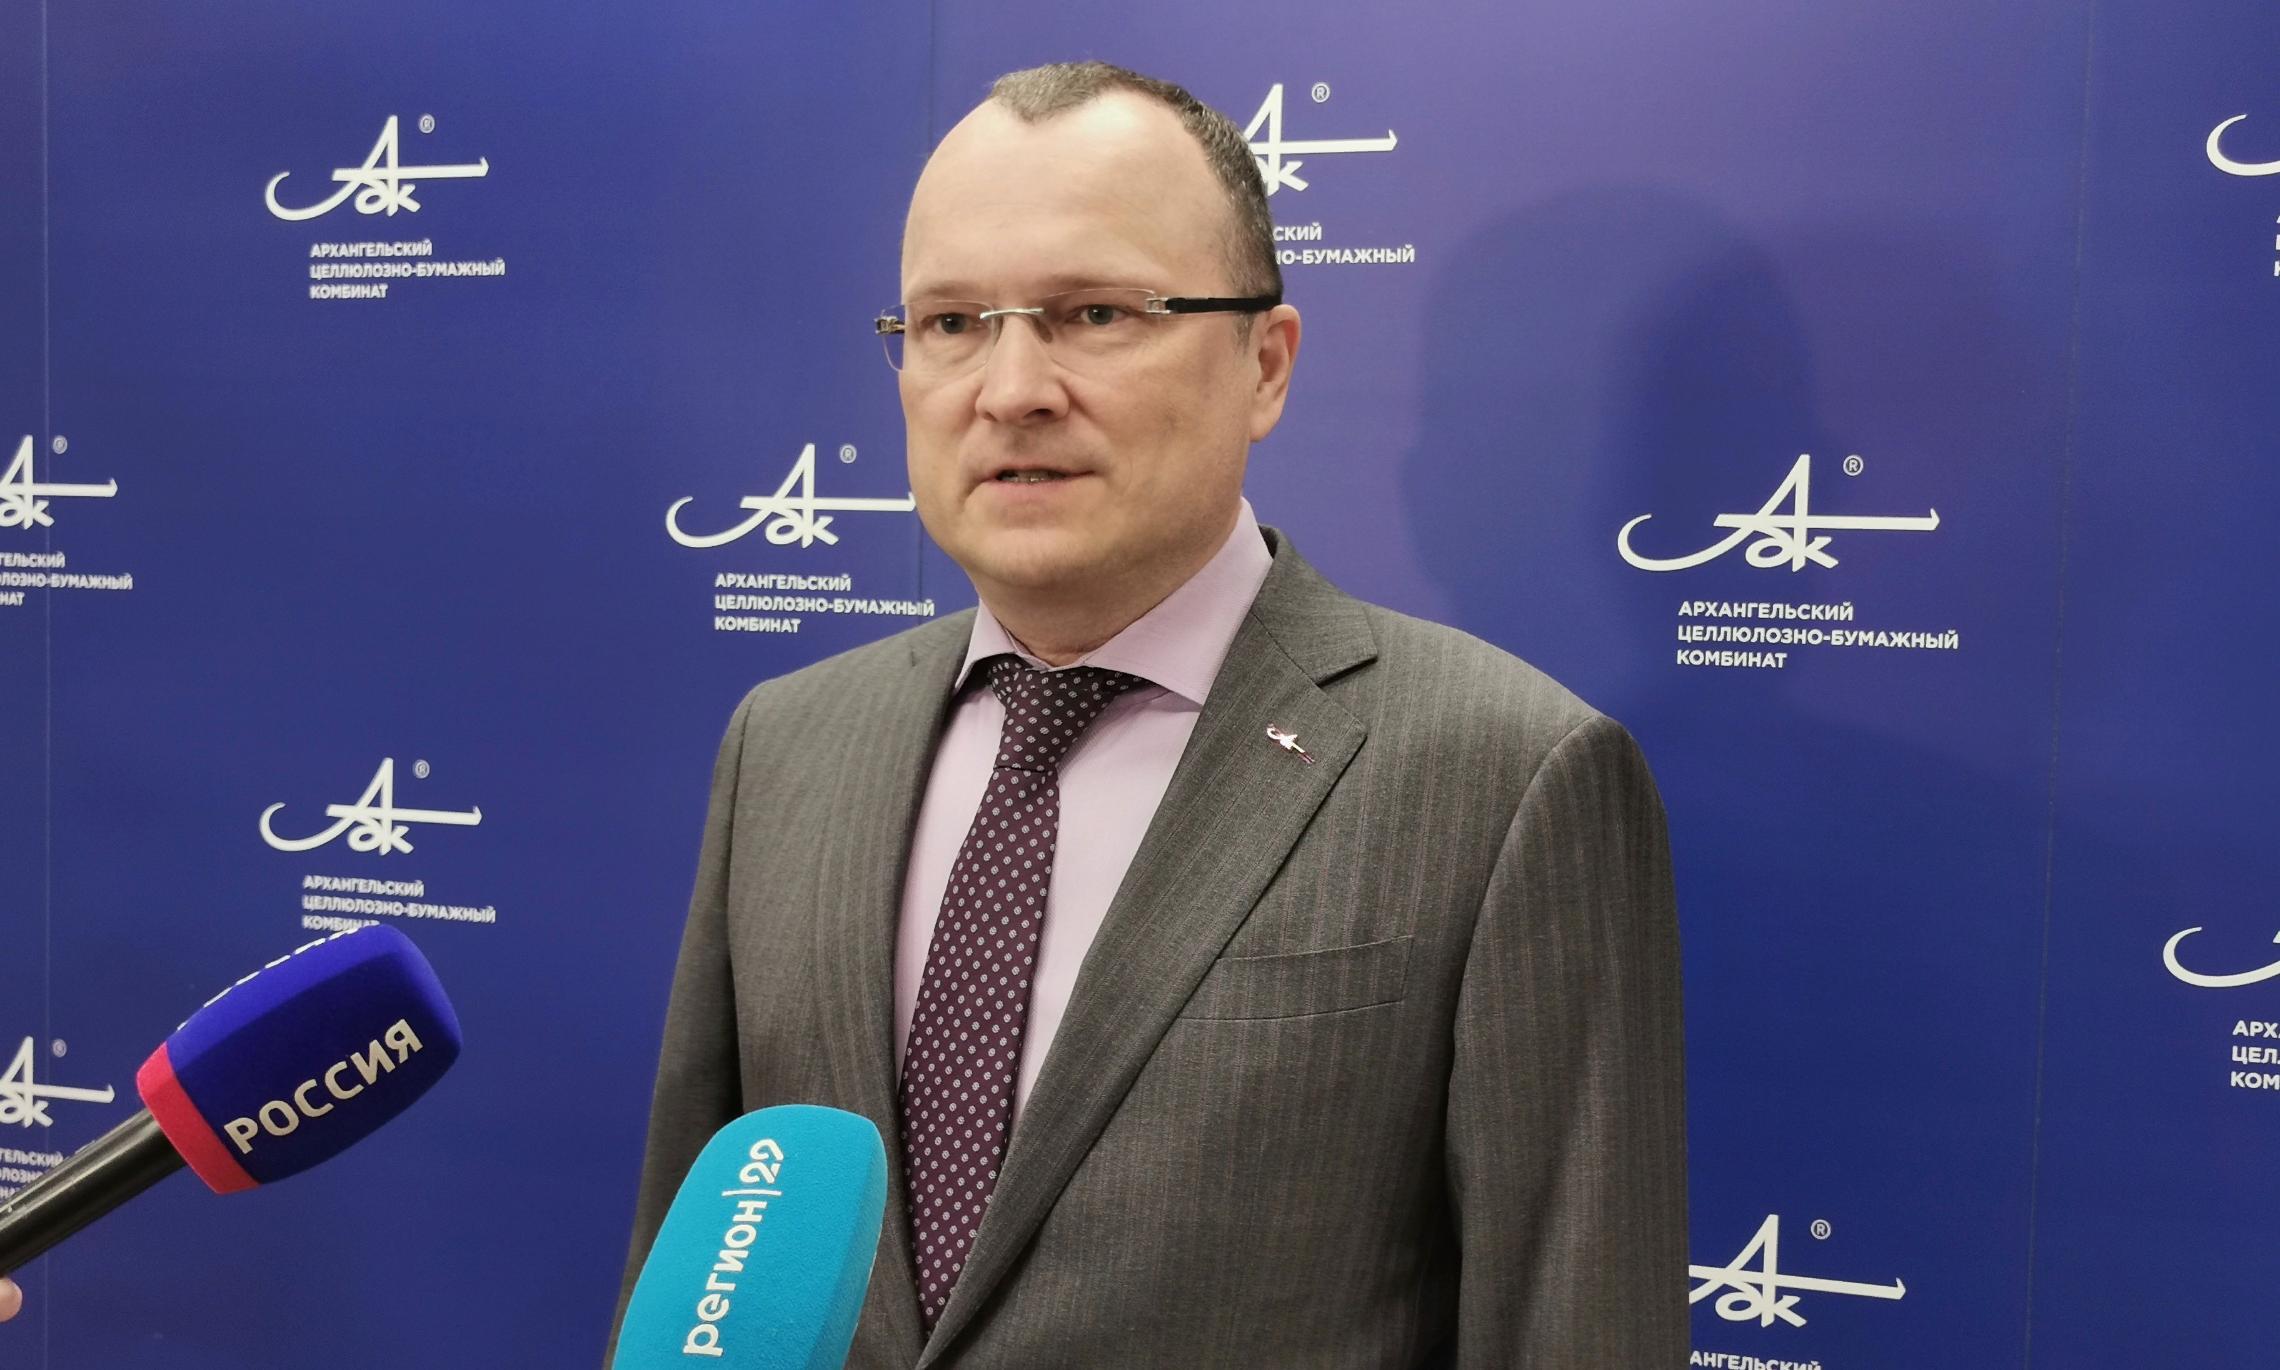 Генеральный директор АЦБК Дмитрий Зылёв.